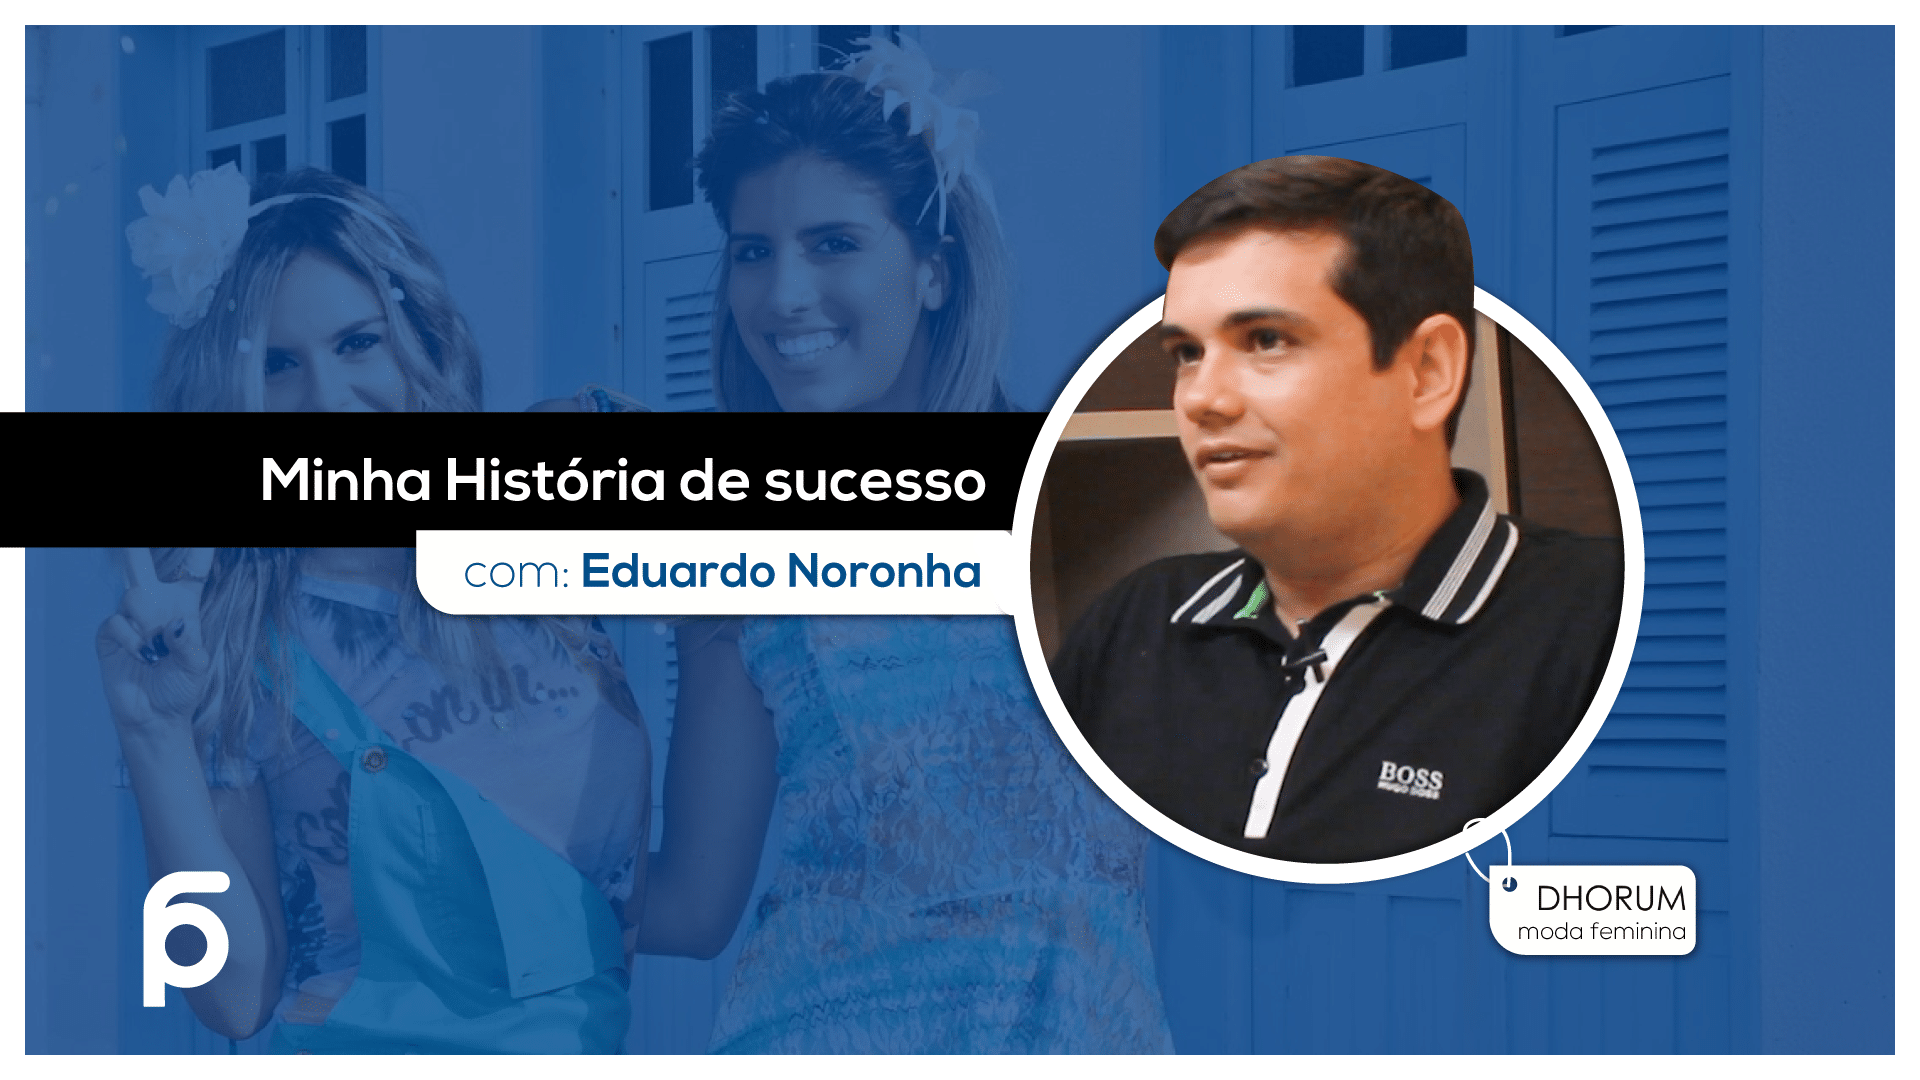 MINHA HISTORIA DE SUCESSO COM EDUARDO NORONHA DA DHORUM